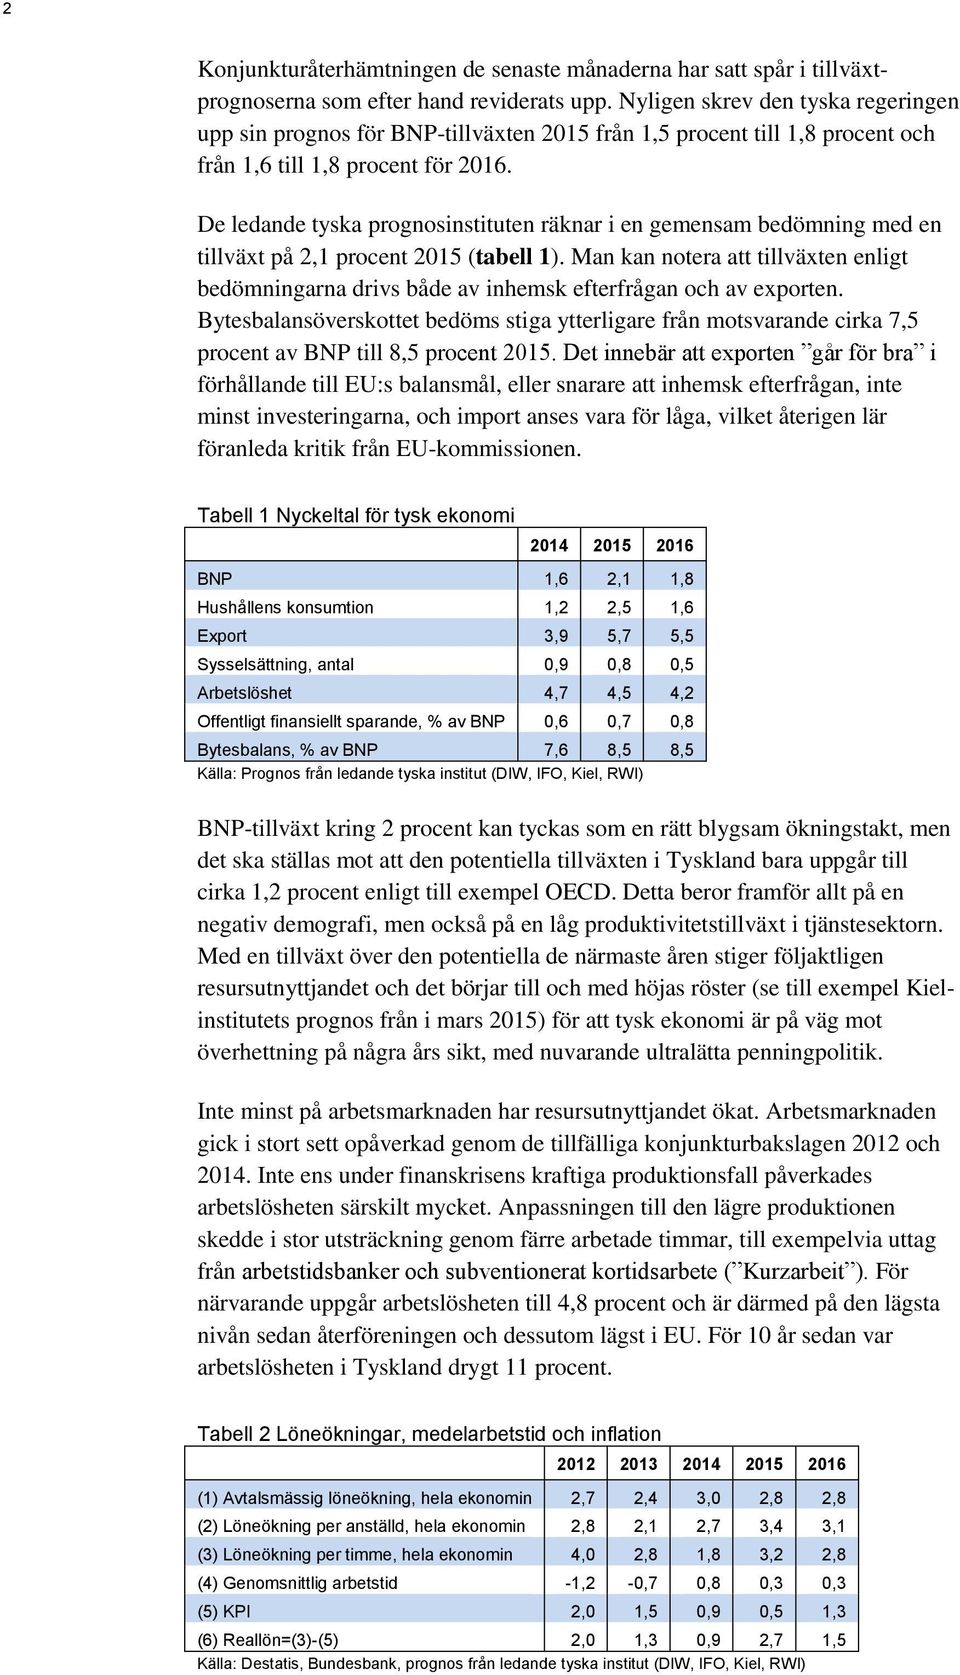 De ledande tyska prognosinstituten räknar i en gemensam bedömning med en tillväxt på 2,1 procent 2015 (tabell 1).